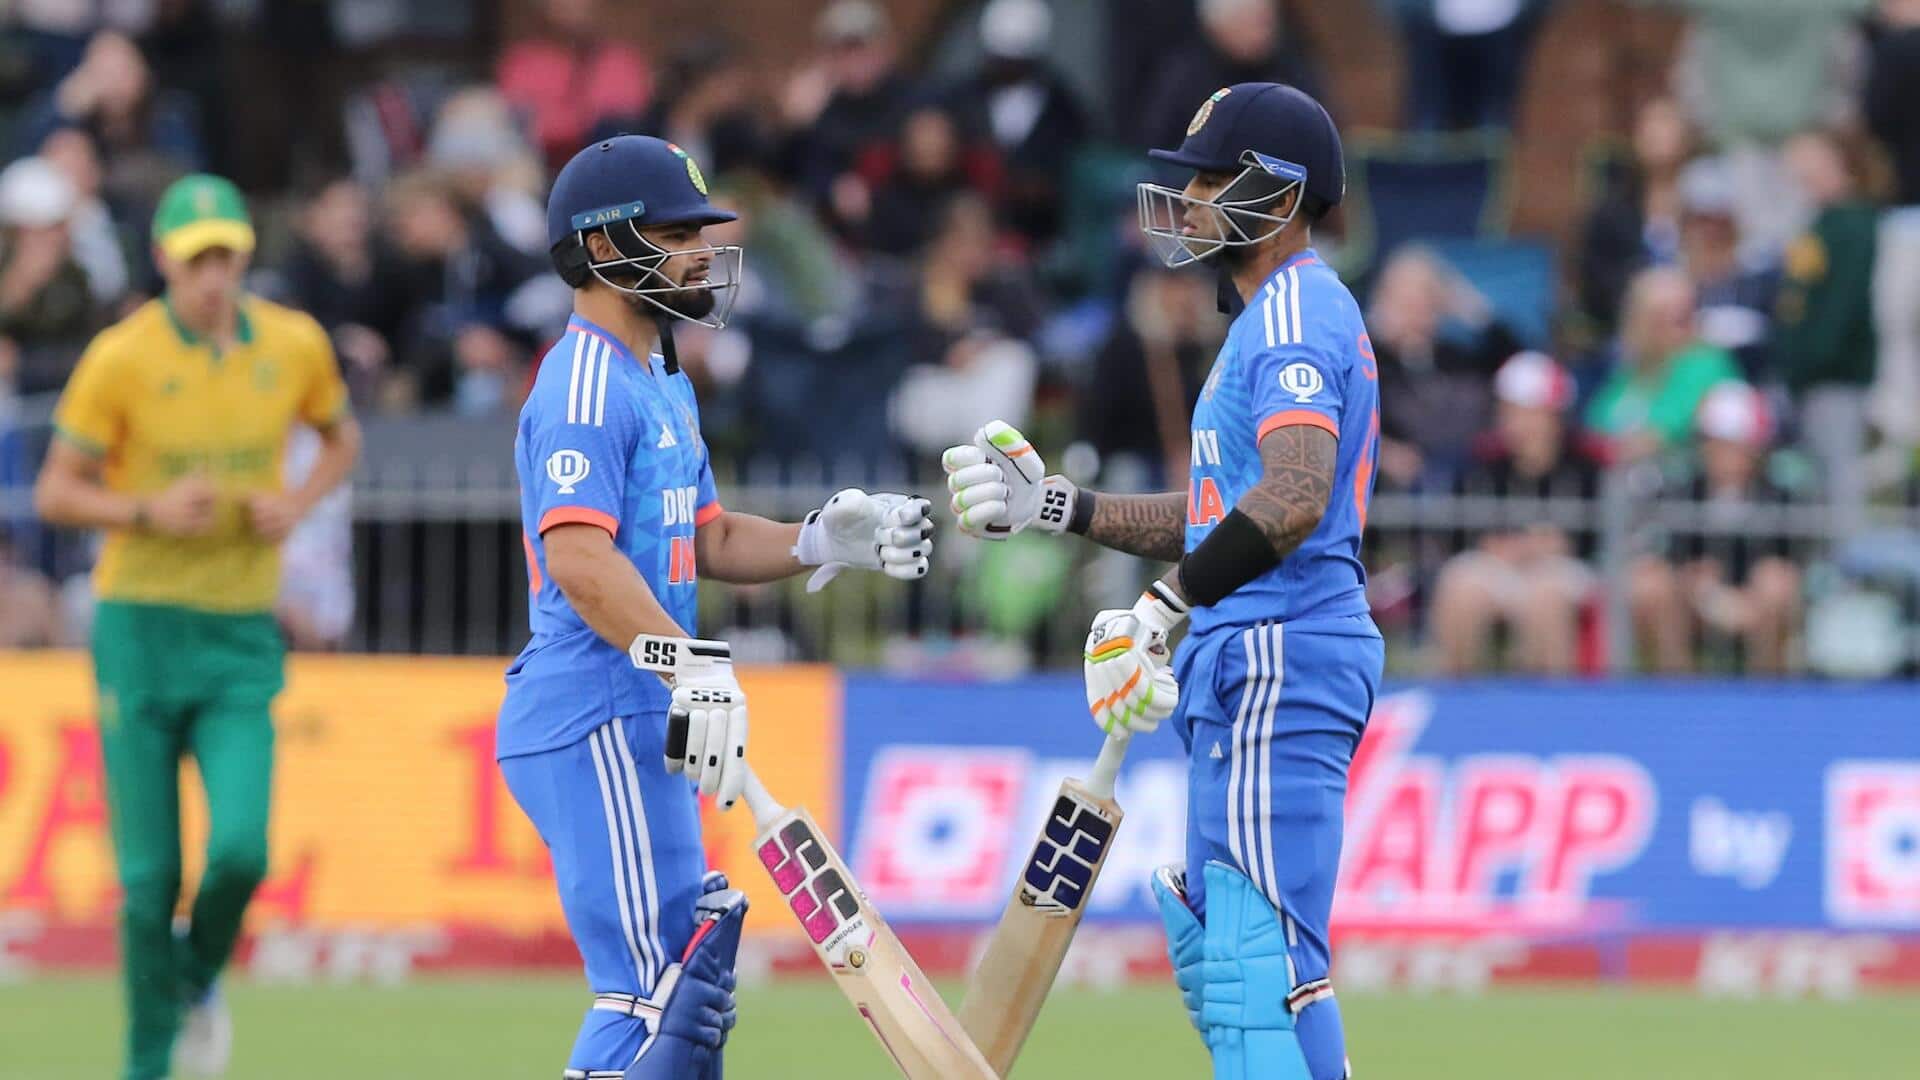 तीसरा टी-20: भारत ने दक्षिण अफ्रीका को दिया 202 रन का लक्ष्य, सूर्यकुमार-यशस्वी की उम्दा पारियां